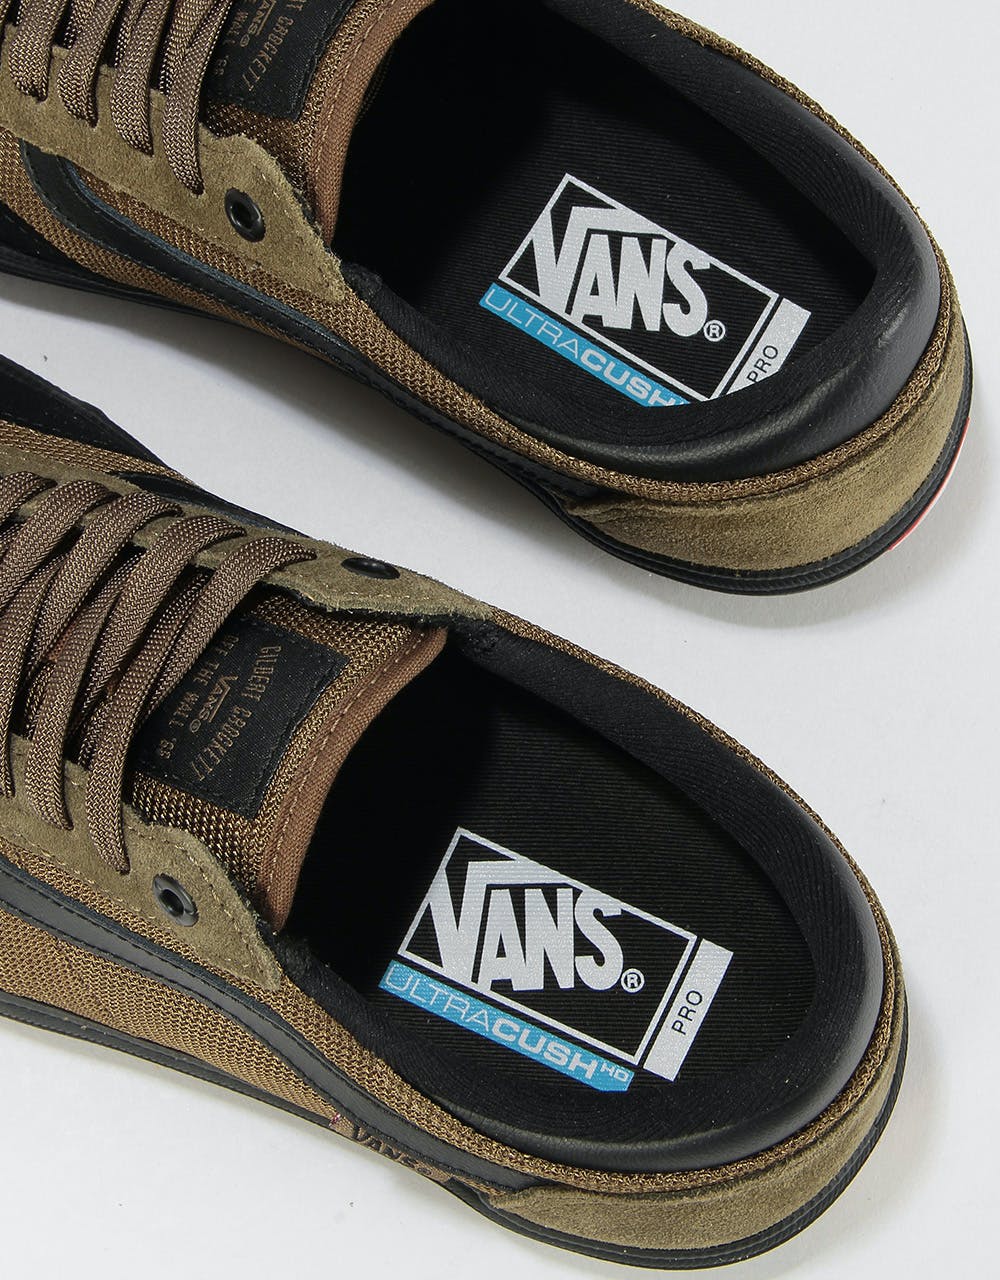 Vans Gilbert Crockett 2 Pro Skate Shoes - (Tactile) Beech/Black